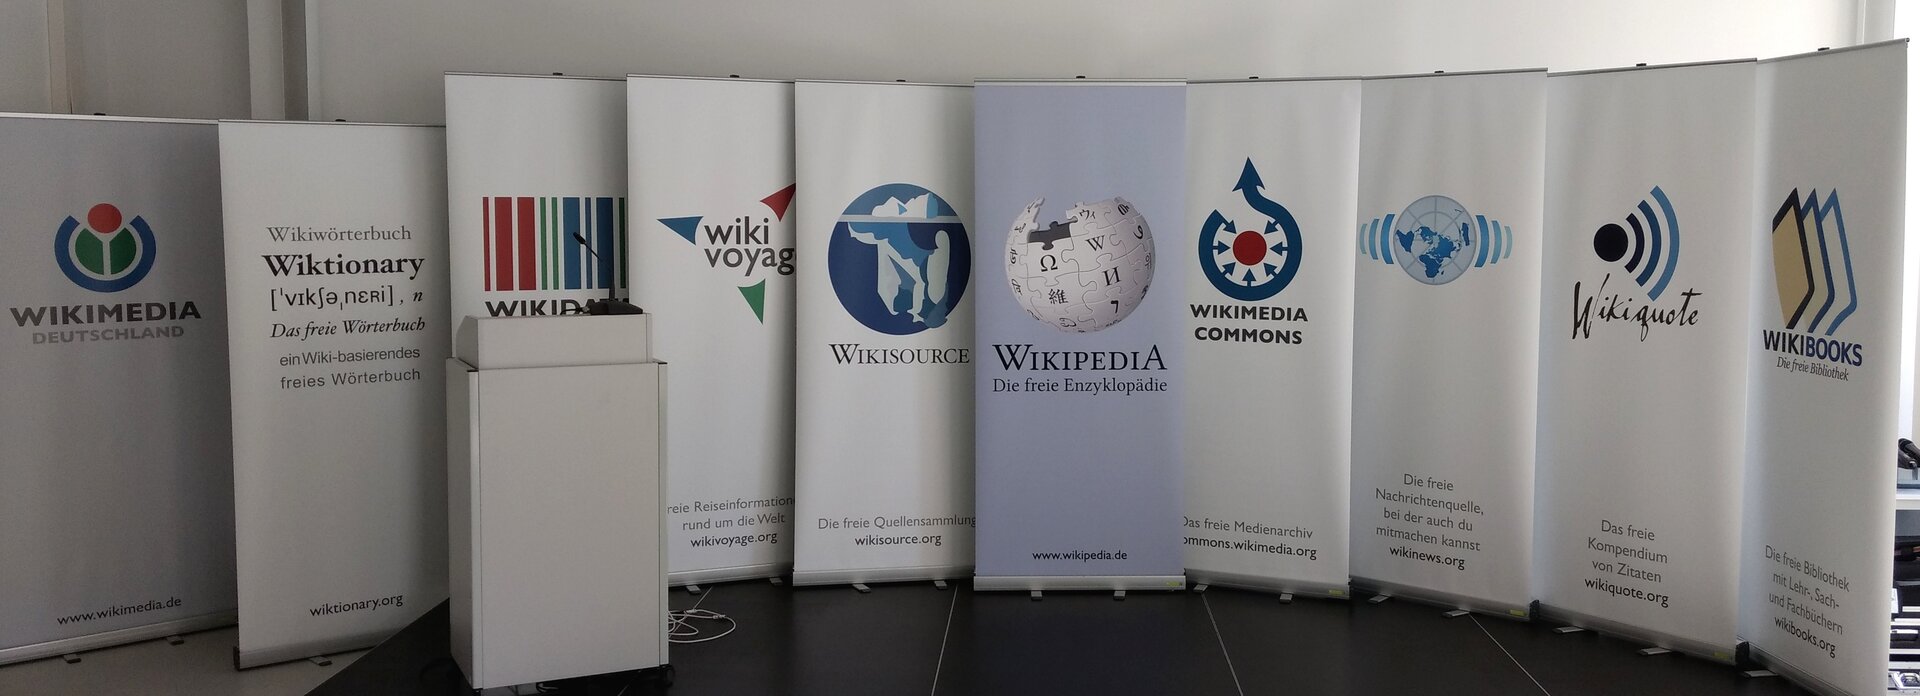 Fotografia przedstawiająca plakaty typu Roll‑up należące do Wikimedia. Na scenie znajduje się 10 plakatów, przed nimi stoi mównica z mikrofonem. Od lewej przedstawiają nazwy z logo: Wikimedia Niemcy, Wikitionary, Wikidata, Wiki Voyag, Wikisource, Wikipedia Darmowa encyklopedia, Wikimedia Commons, Wiki News, Wikigoute, Wikibooks.